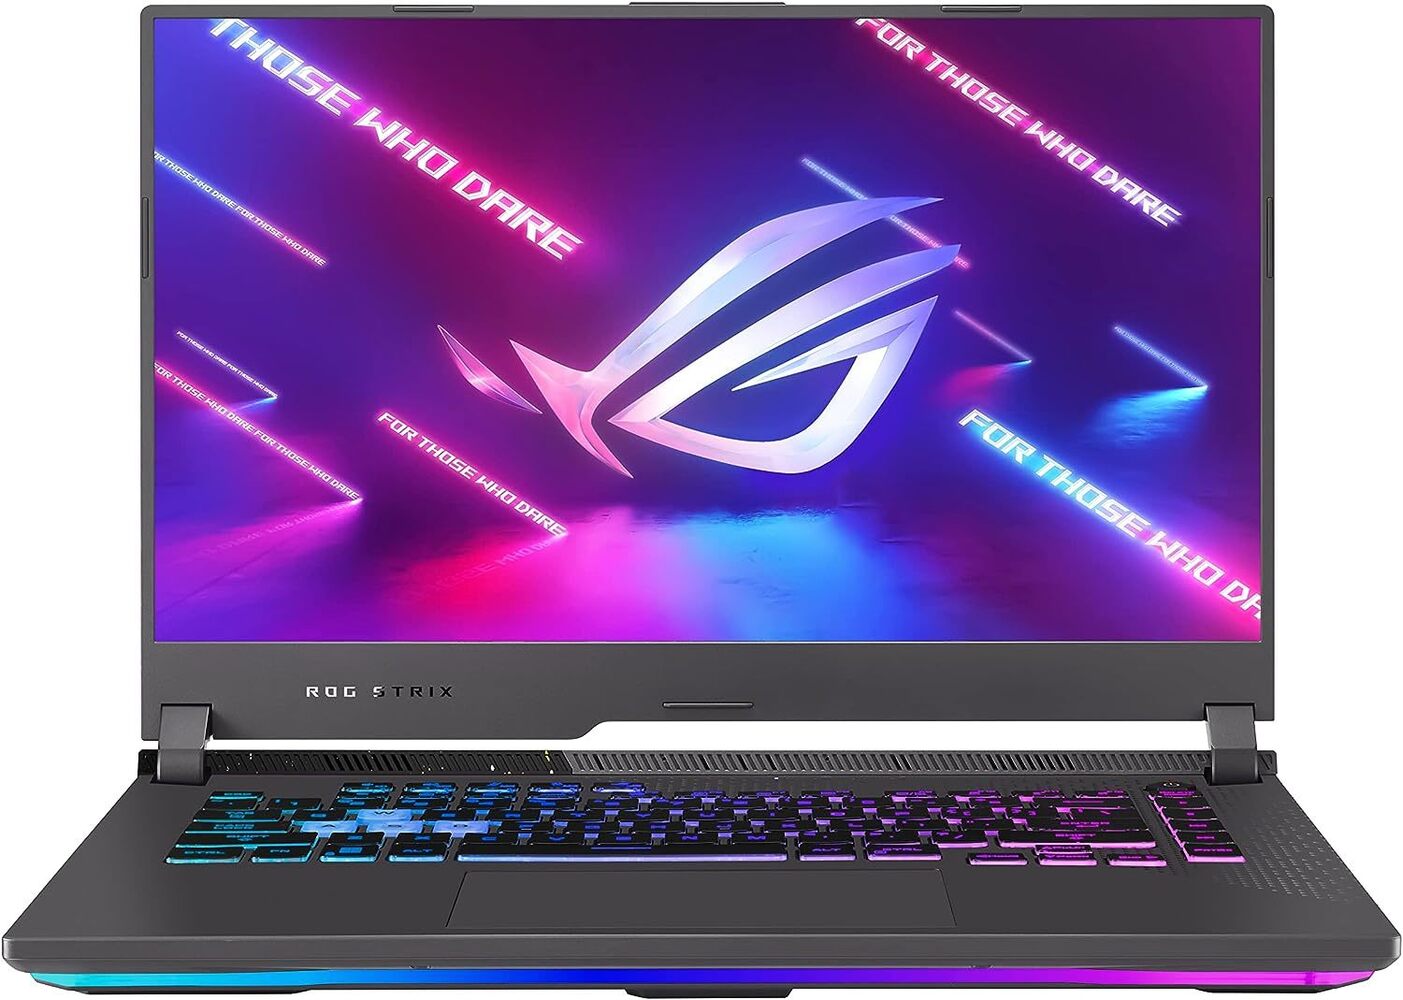 ASUS ROG Strix G15 (2021) Gaming Laptop, 15.6 144Hz FHD.